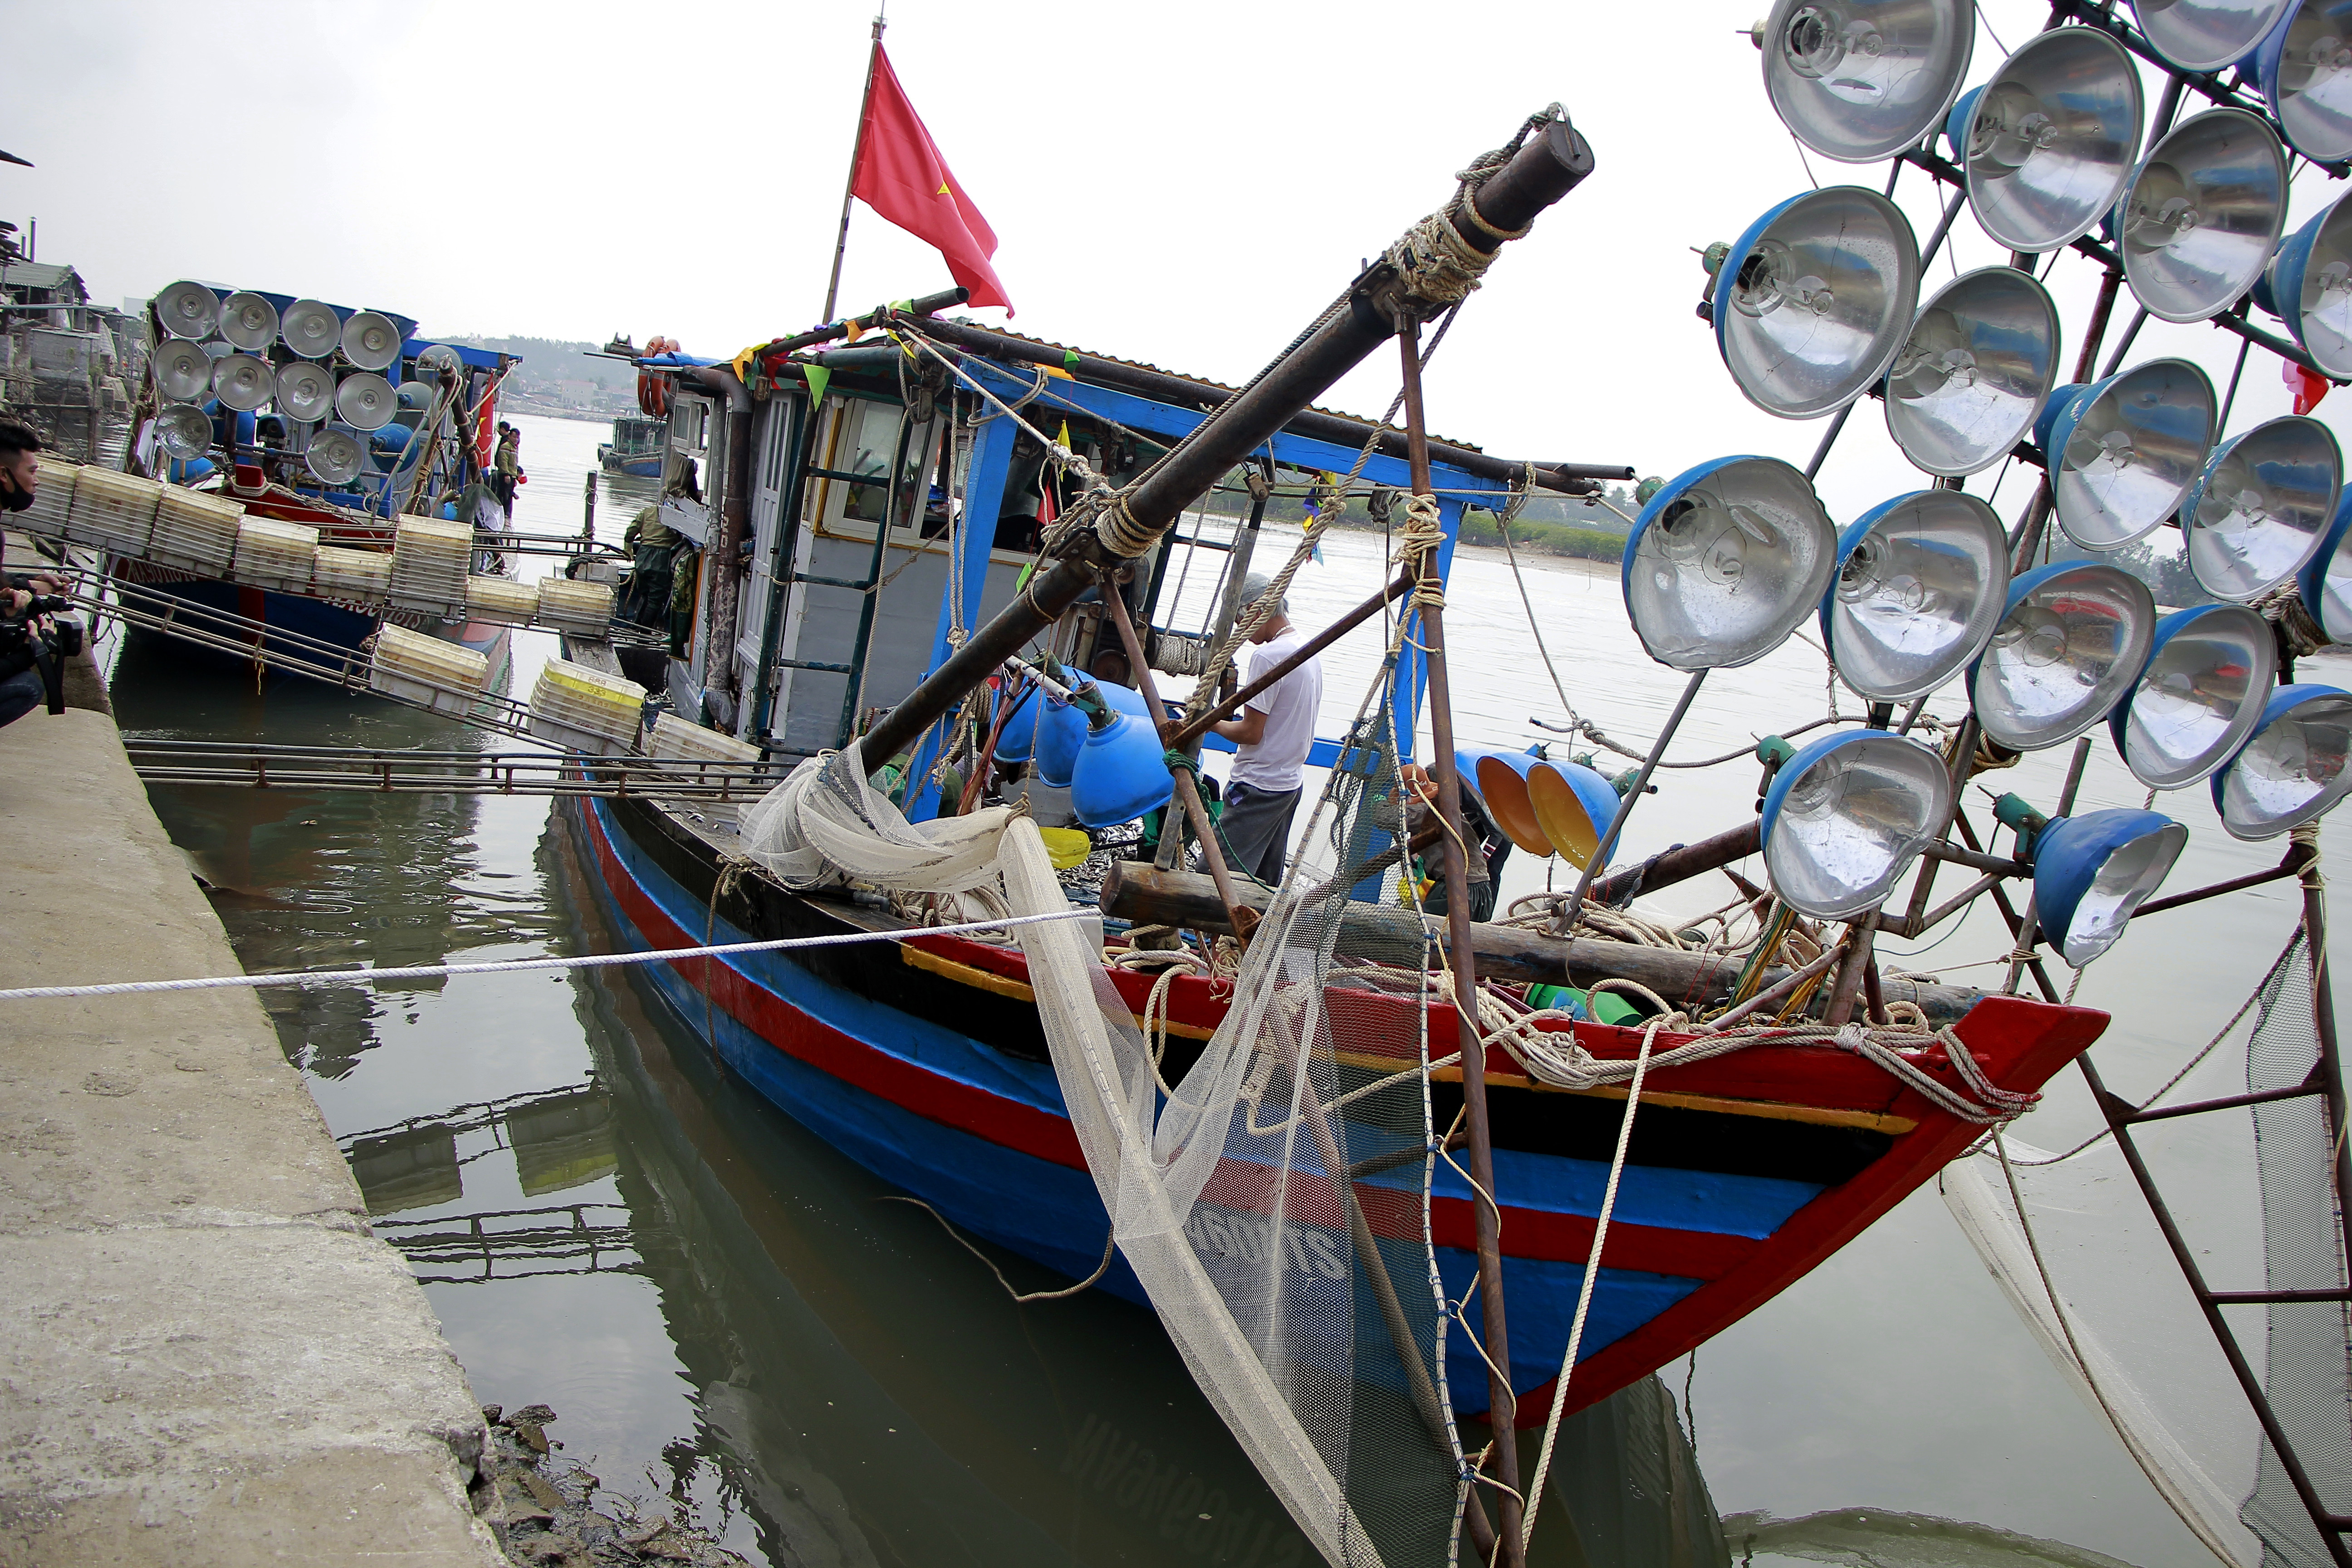 Sau những ngày nghỉ Tết, từ mồng 3 Âm Lịch đến nay các tàu thuyền của ngư dân phường Quỳnh Dị, thị xã Hoàng Mai lại nối nhau ra khơi đánh cá và cập bến sau vài ngày với đầy khoang cá trích.